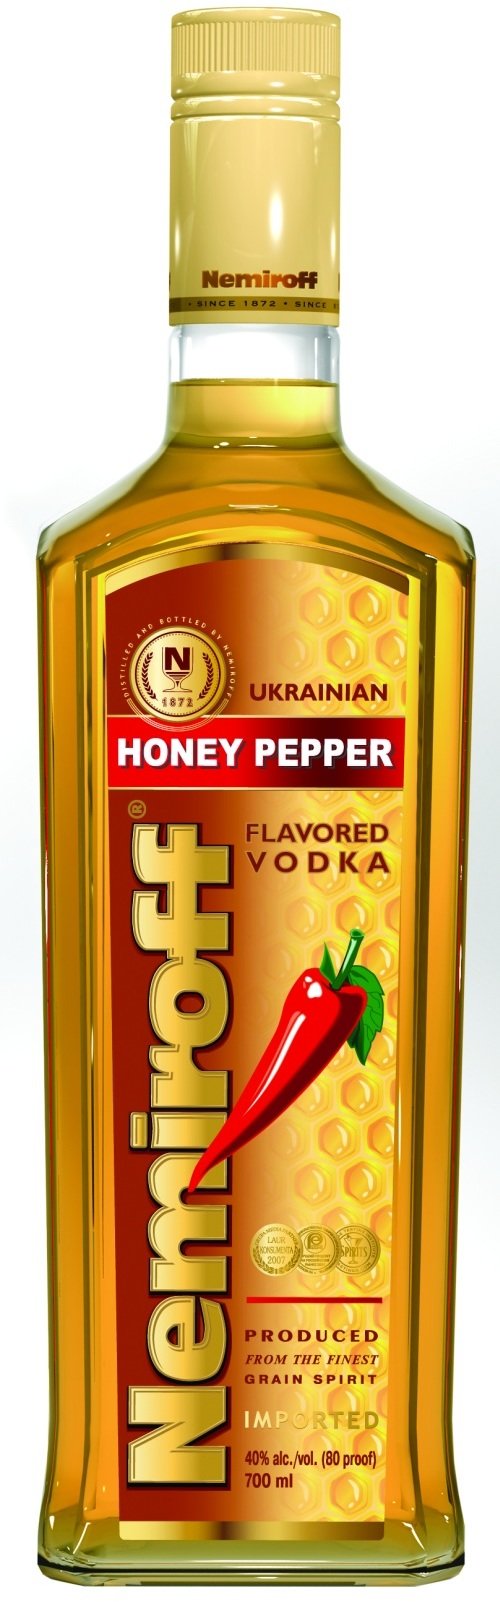 Nemirnoff Honey Pepper 1Ltr